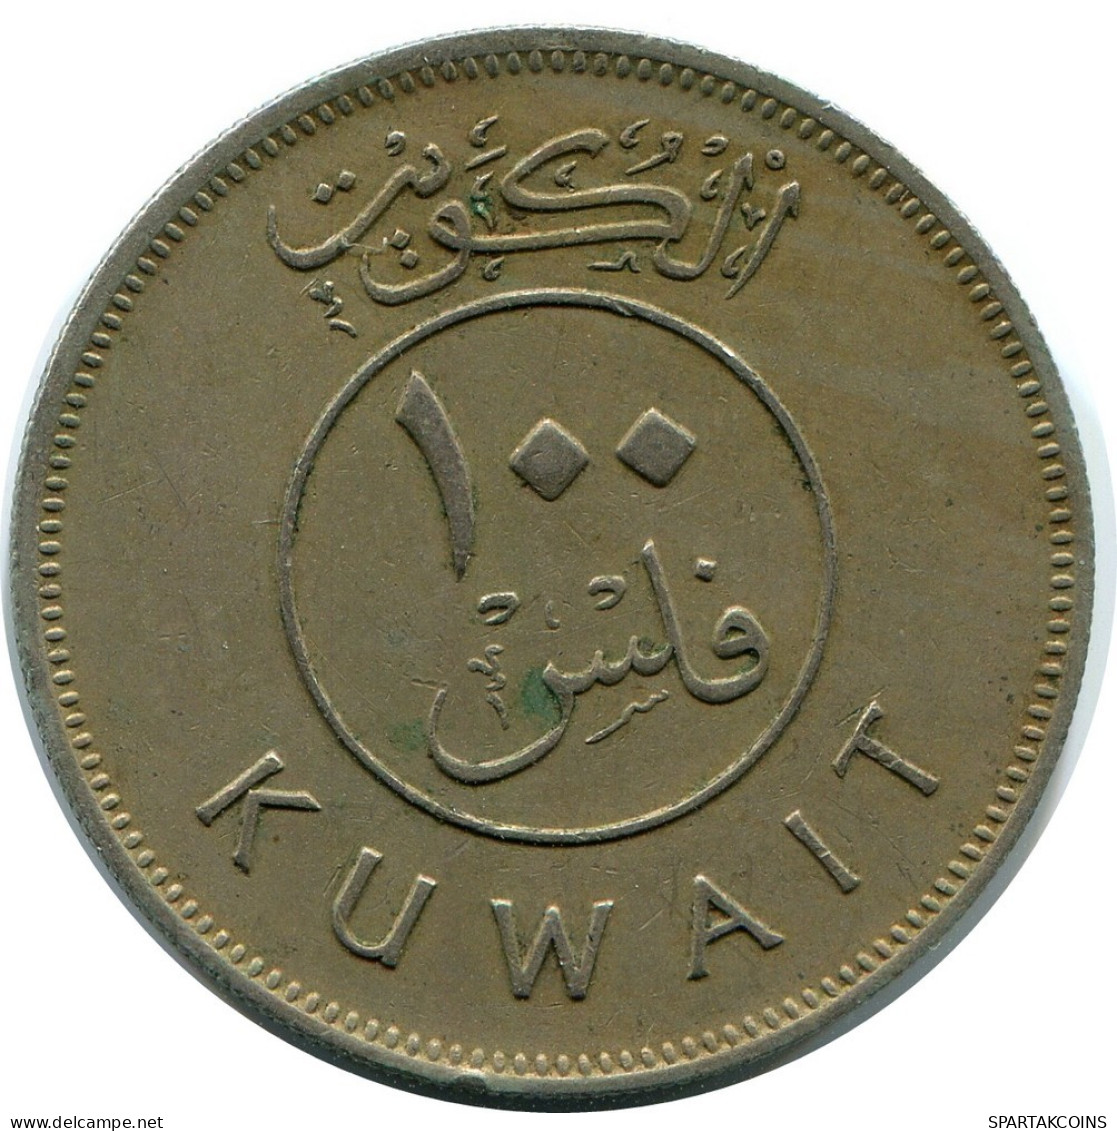 100 FILS 1976 KUWAIT Coin #AP351.U.A - Kuwait